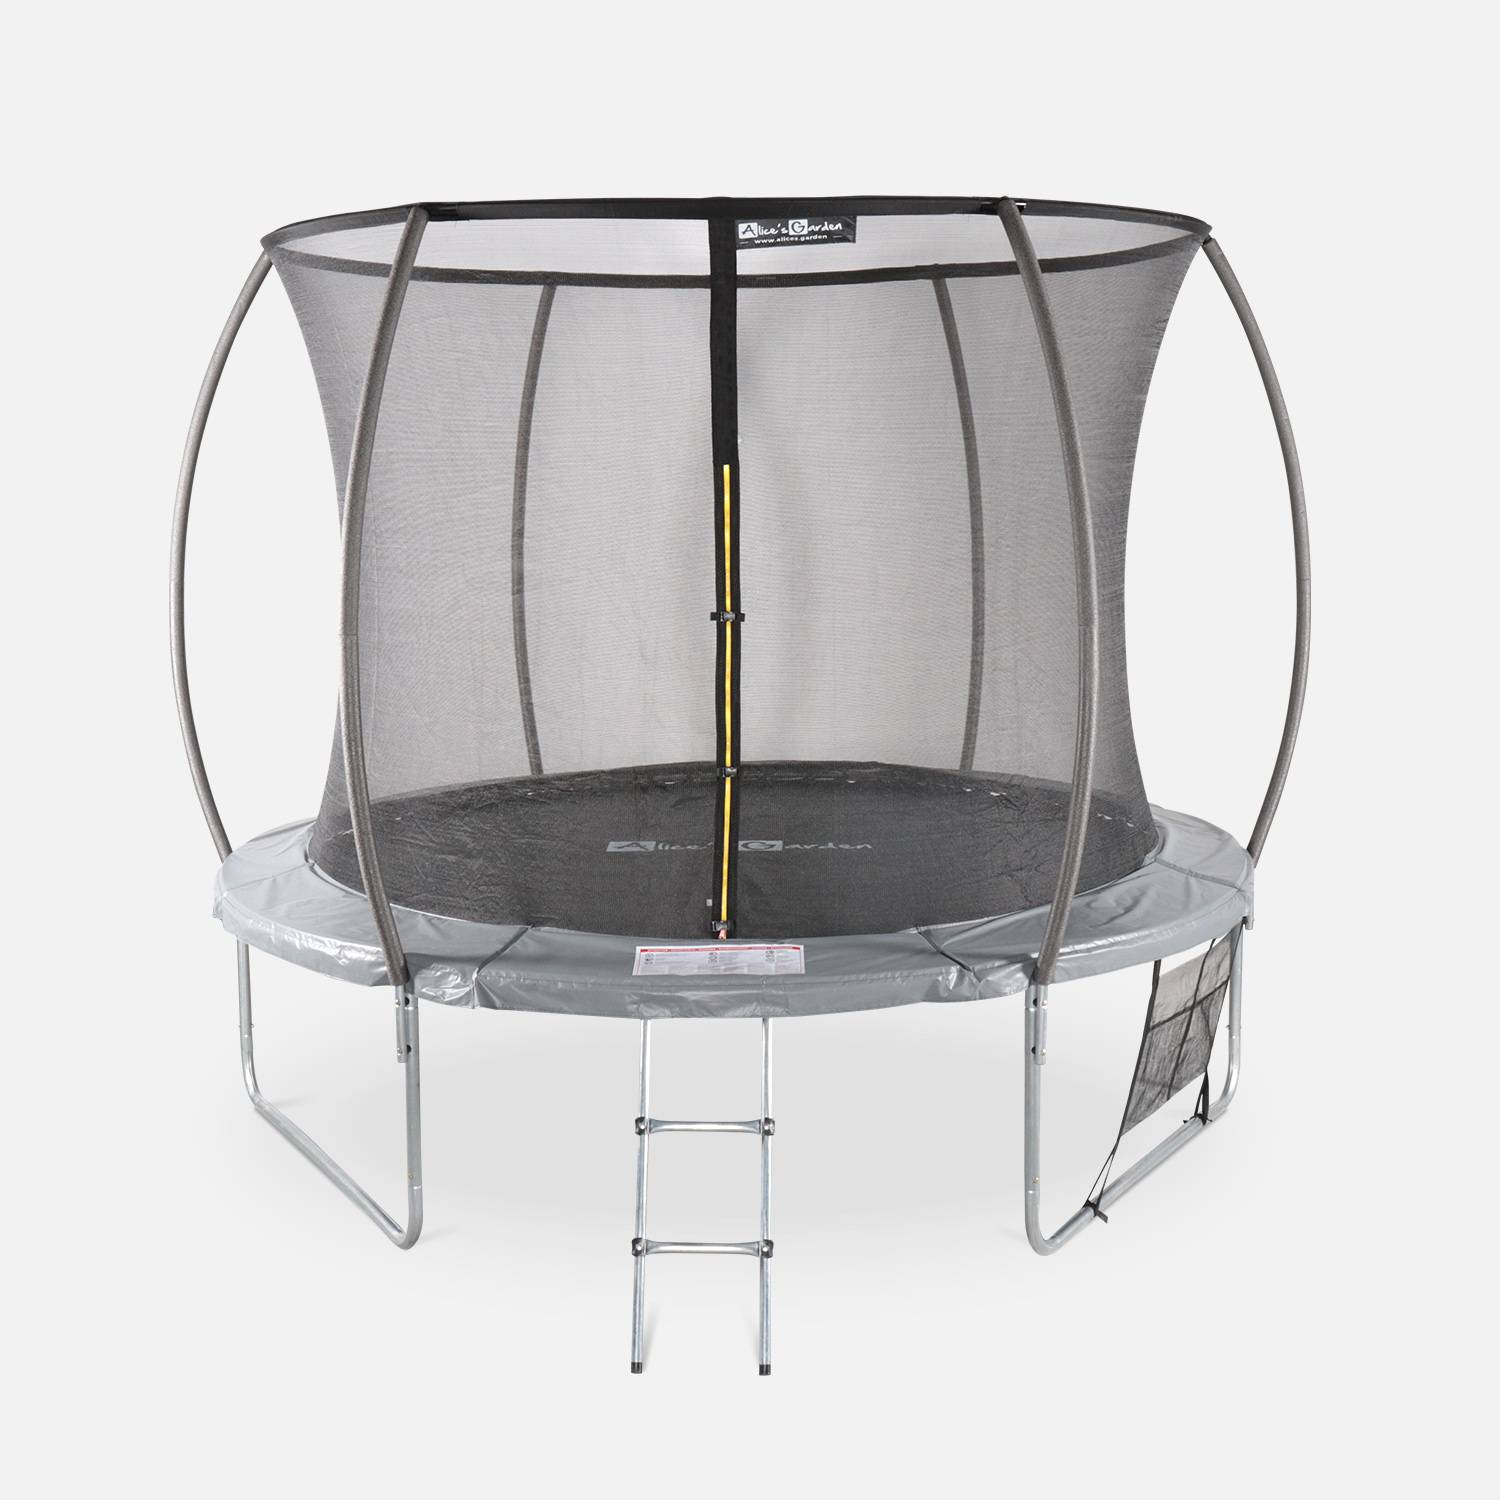 Cama elástica redonda 305 cm gris con red de seguridad interna - Mars INNER XXL- Nuevo modelo - cama elástica de jardín 3,05 m 305 cm | Calidad PRO. | Normas de la UE. Photo2